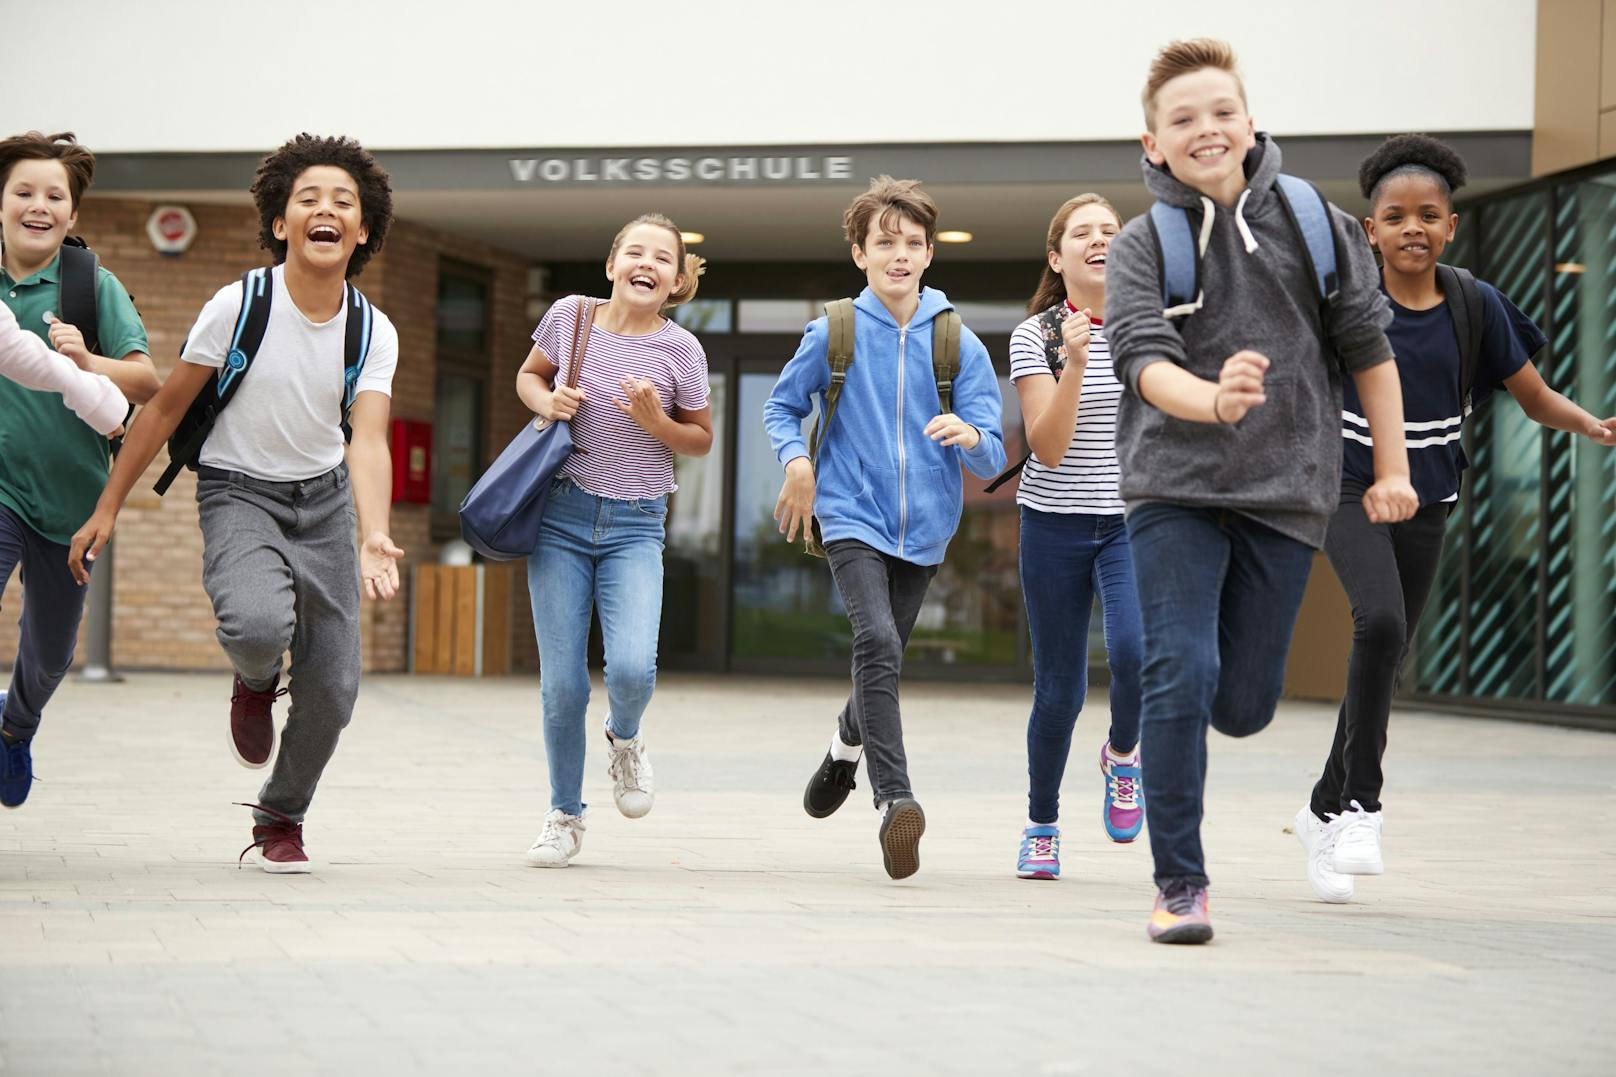 Gesunde Ernährung und viel Bewegung in Schule und Freizeit wirken sich stark auf die Erfolge beim Lernen und sportlichen Wettkämpfen aus.